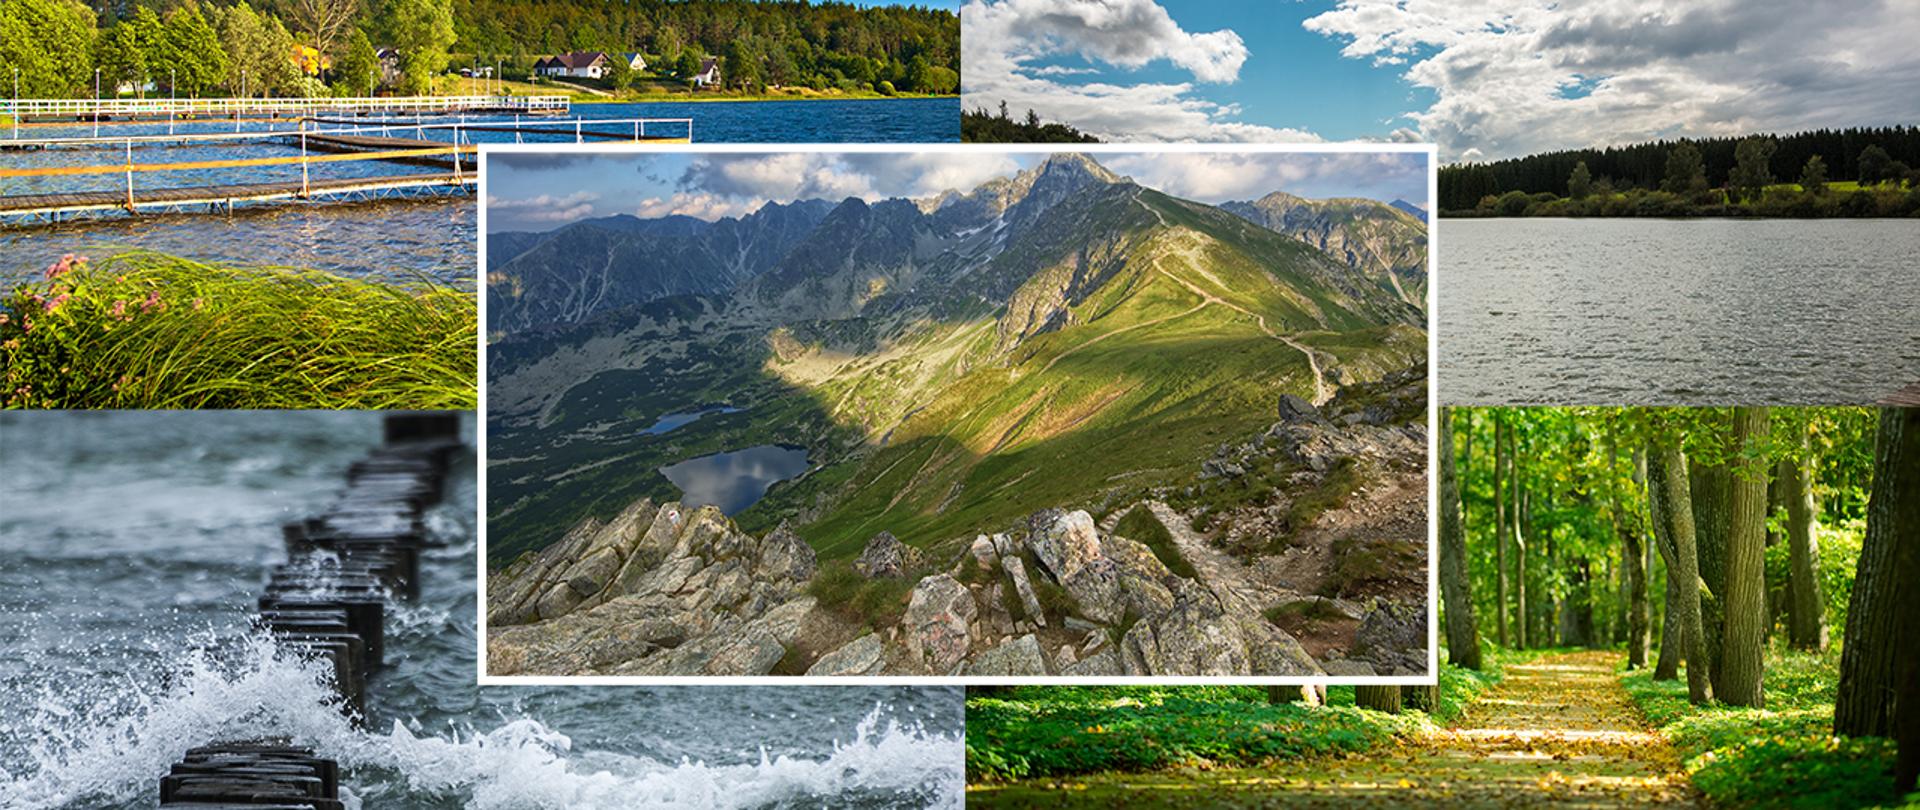 Zdjęcia wakacyjnych widoków nad jeziorem, nad morzem, w górach oraz w lesie.